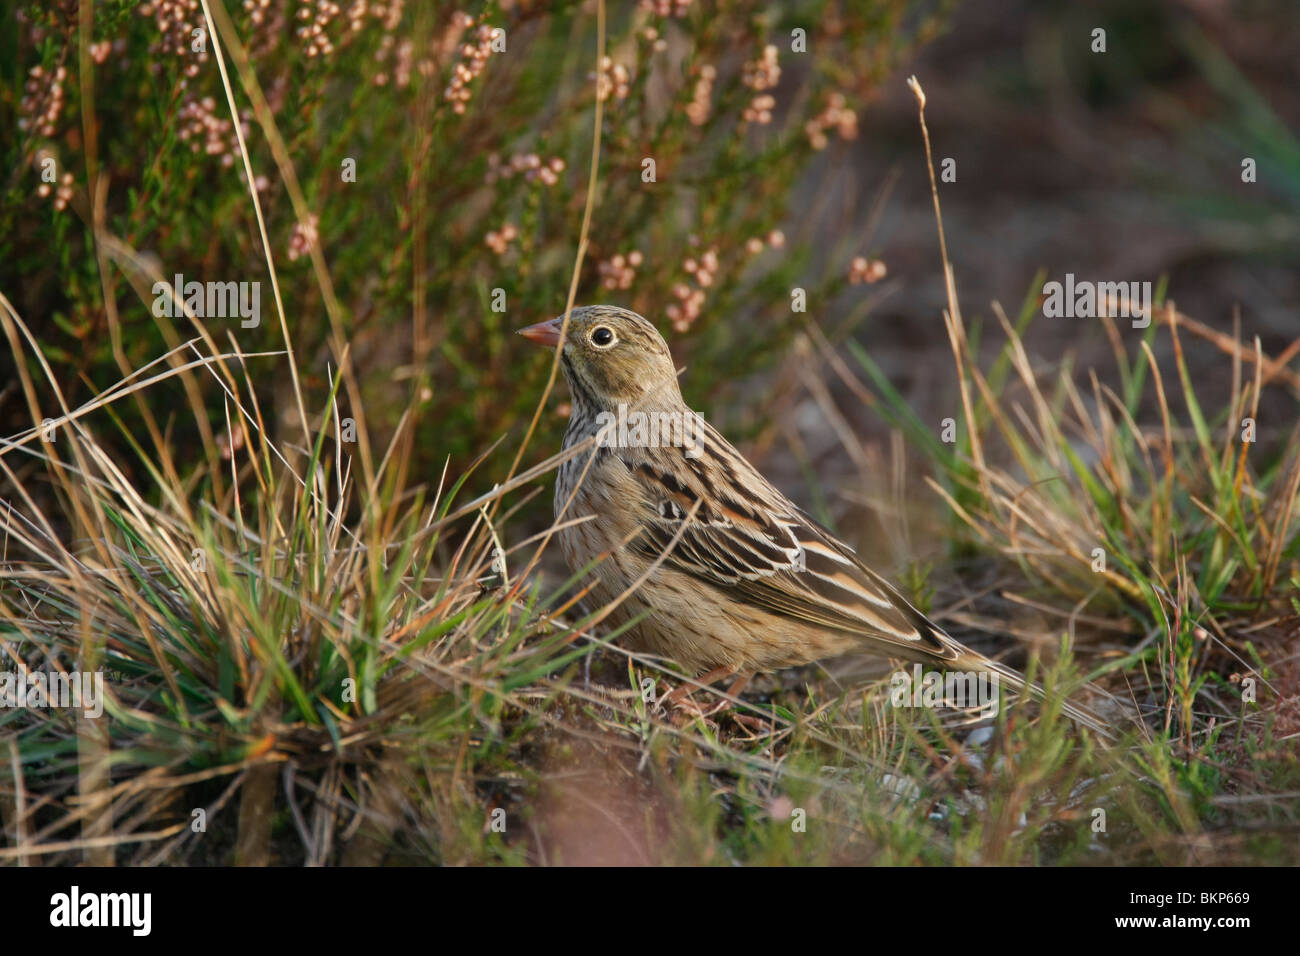 Ortolaan eerstejaars vogel in heideterrein; Ortolan bunting first year in heathland Stock Photo